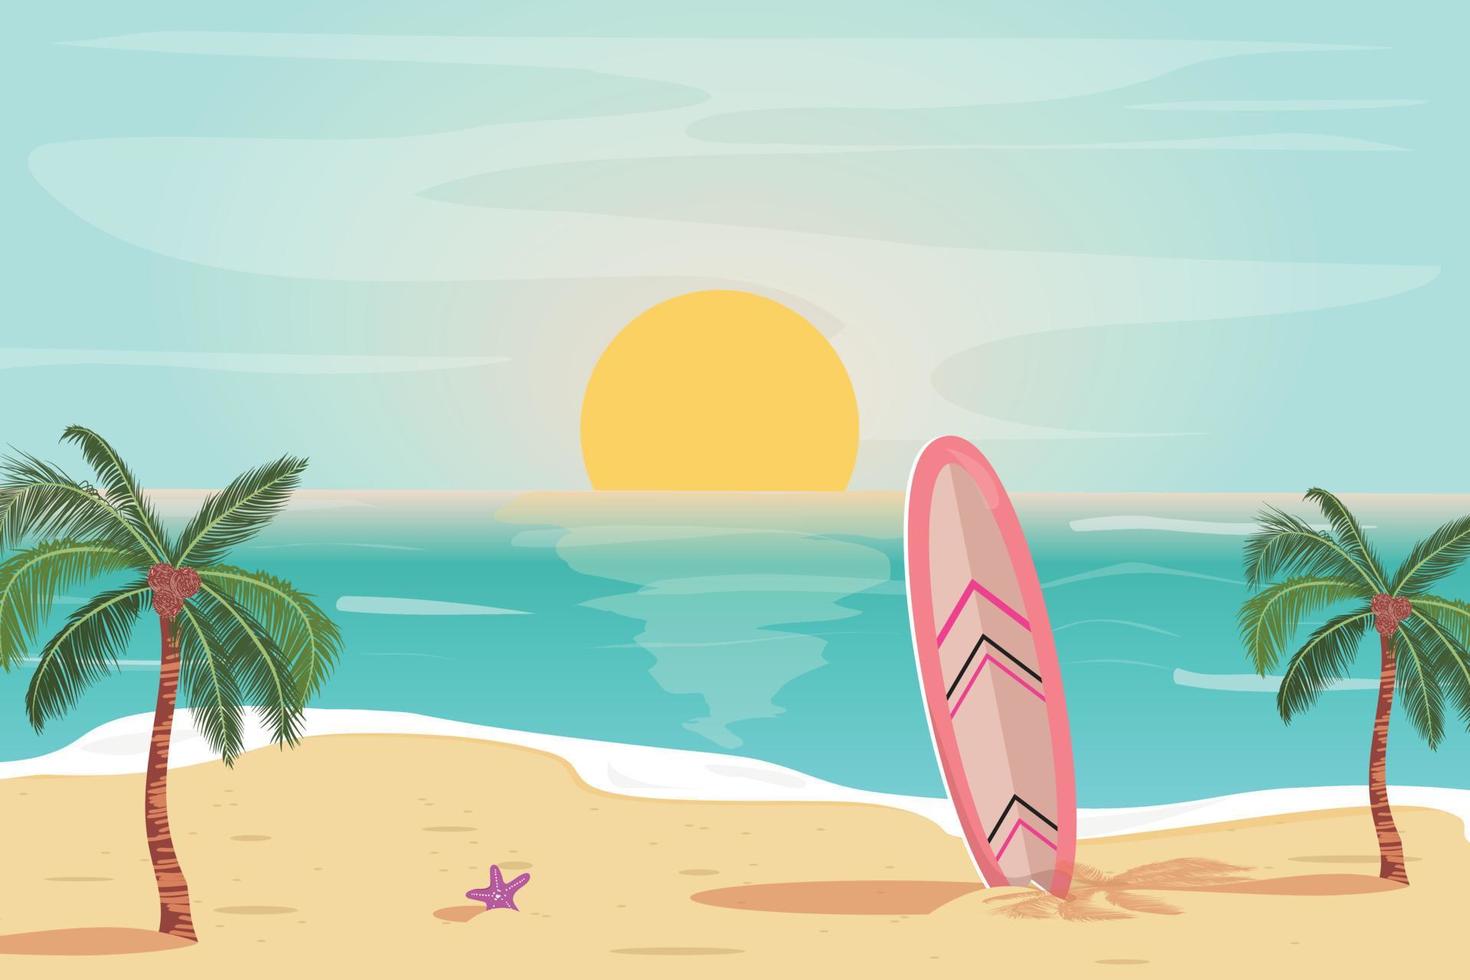 schöne sonnenuntergangillustration mit strand, surfbrett, palmen und seesternen. sommerlicher tropischer sonnenuntergang für karten, banner, hintergründe. reise, urlaubskonzeptillustration. vektor